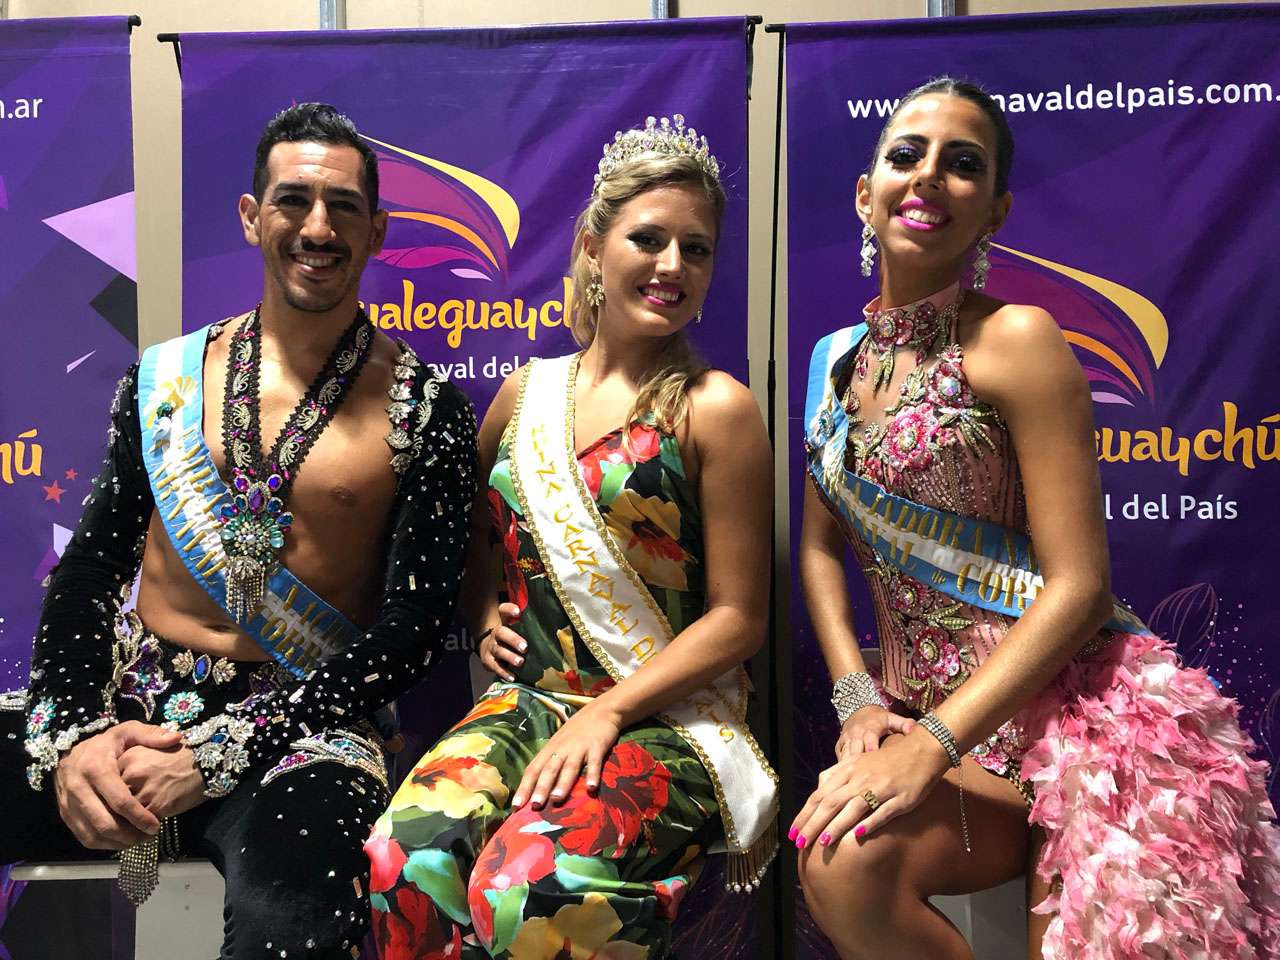 Carnaval del País: Florencia Jurado  desfilará en el Carnaval de Corrientes